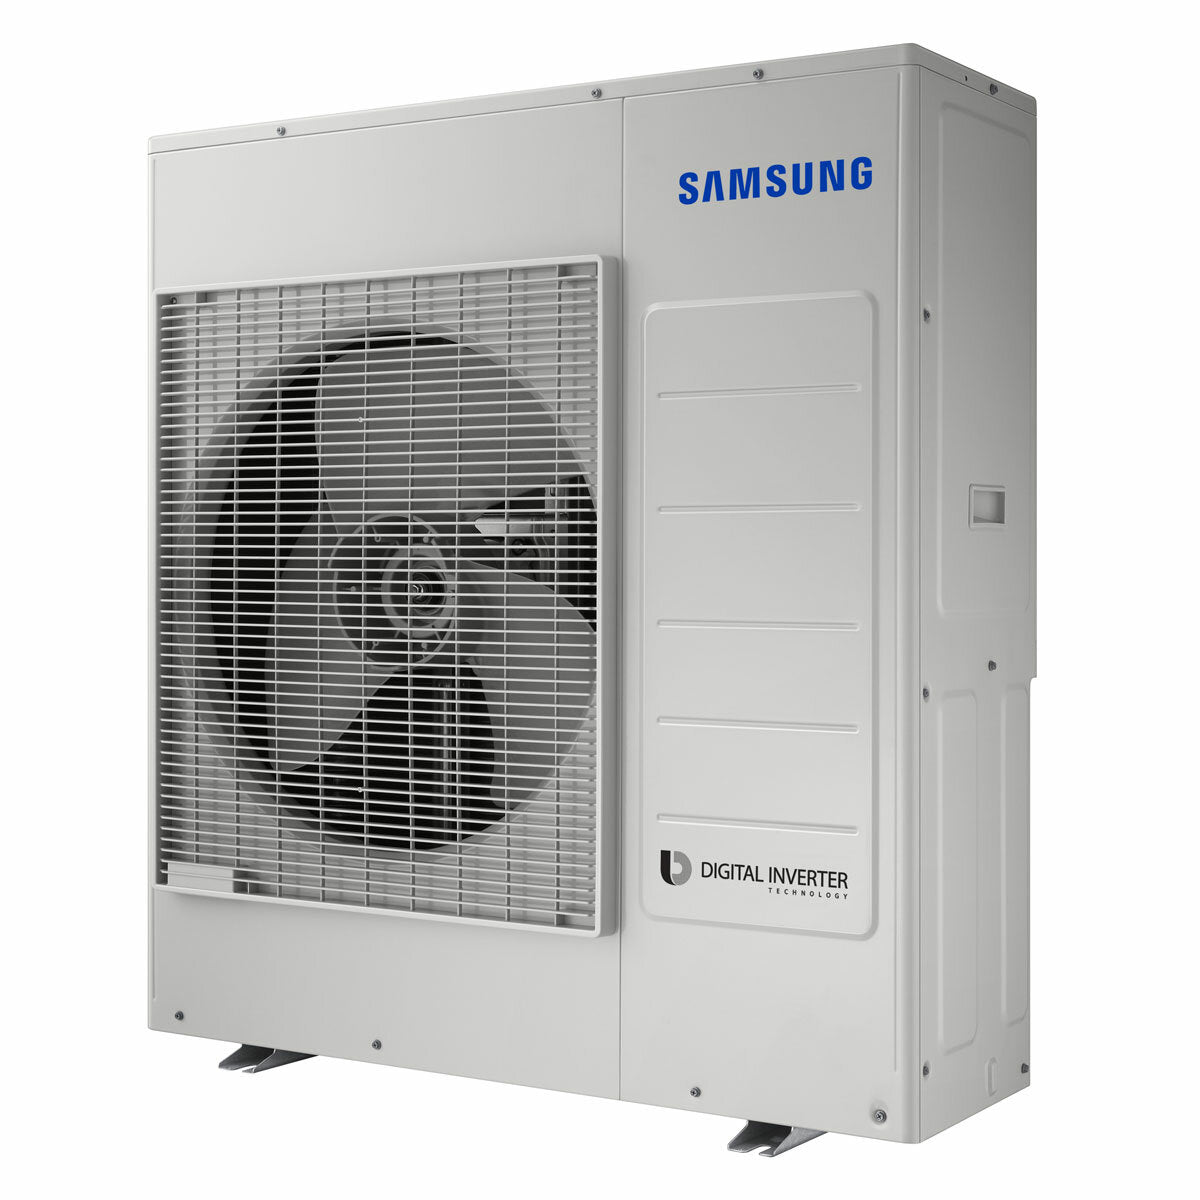 Climatiseur sans vent Samsung Avant penta split 7000 + 7000 + 7000 + 12000 + 12000 BTU onduleur A ++ unité extérieure wifi 10,0 kW